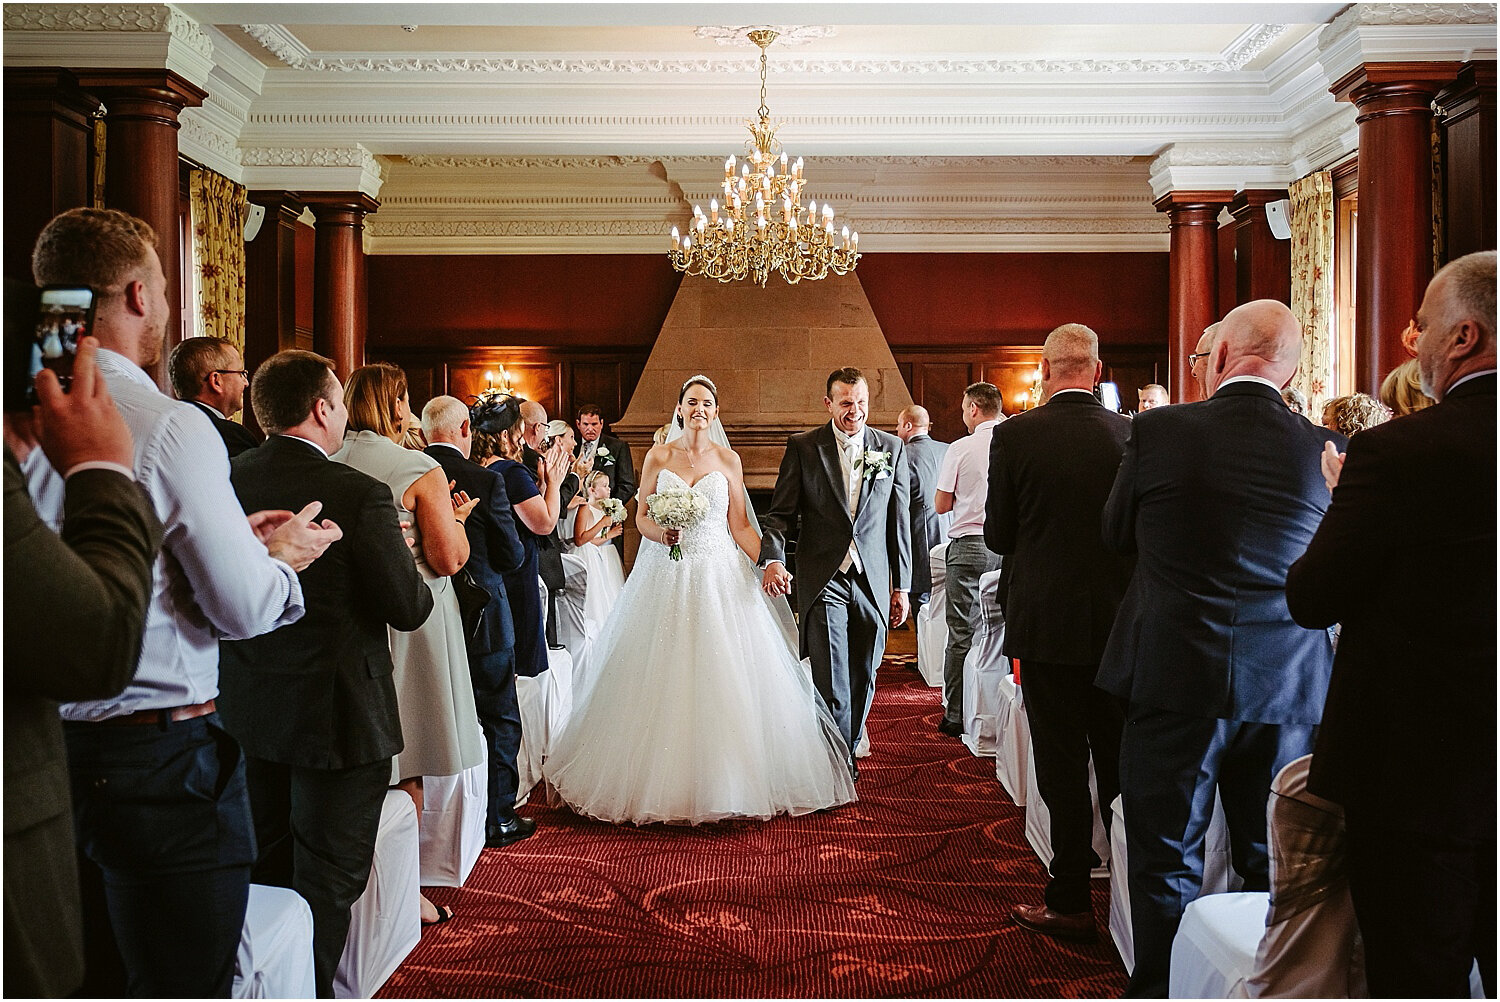 Doxford Hall wedding 038.jpg